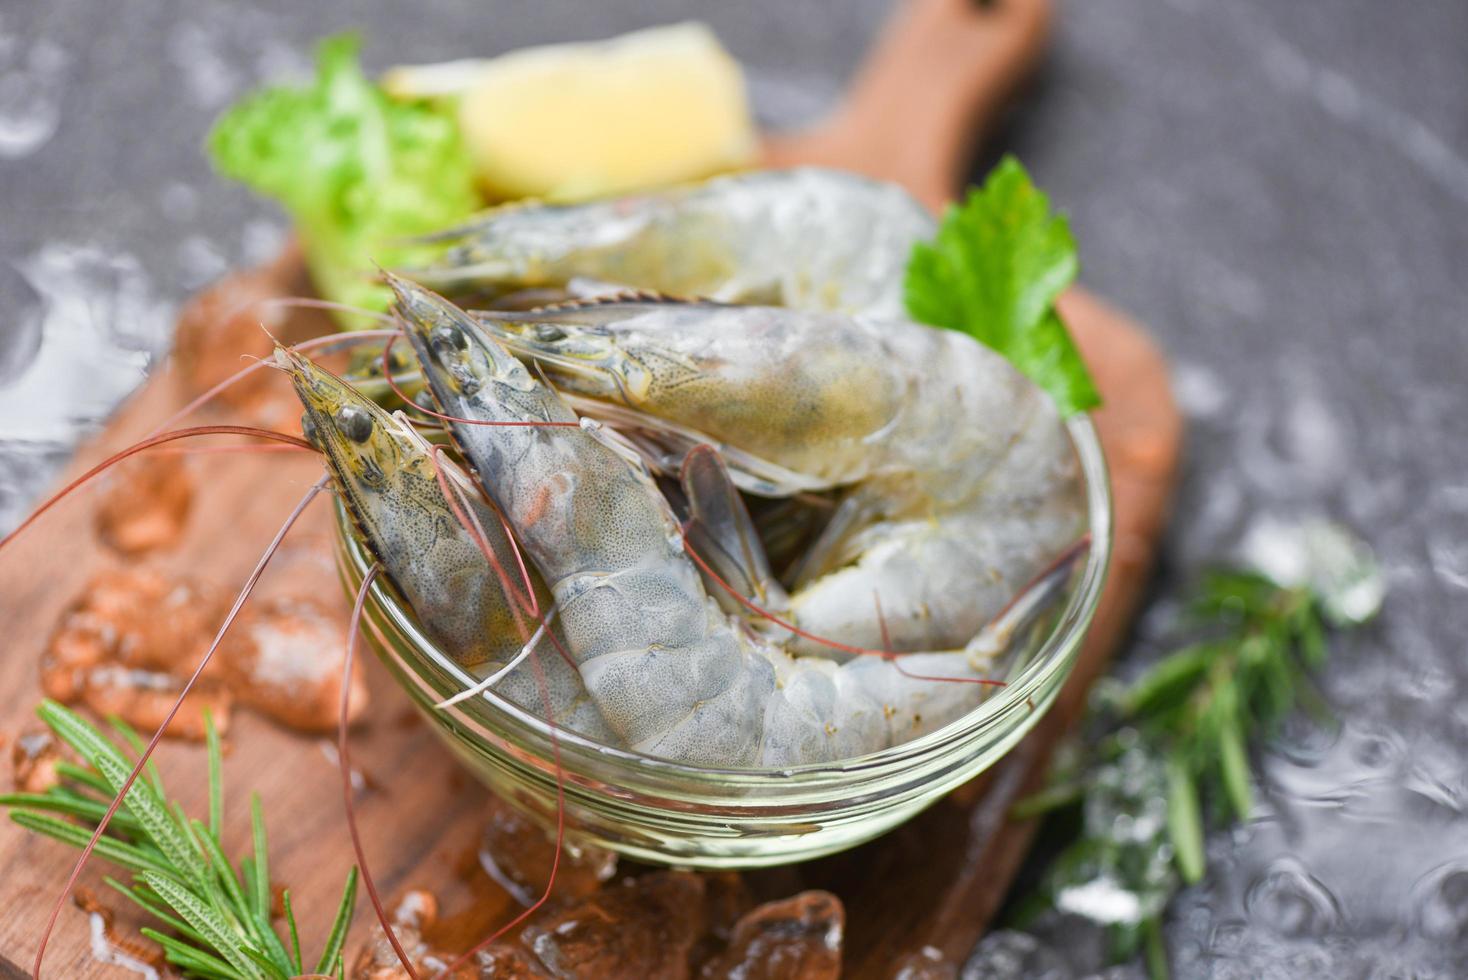 crevettes crues crevettes sur glace congelées au restaurant de fruits de mer - crevettes fraîches sur bol et planche à découper en bois avec ingrédients de romarin herbes et épices pour la cuisson des fruits de mer photo